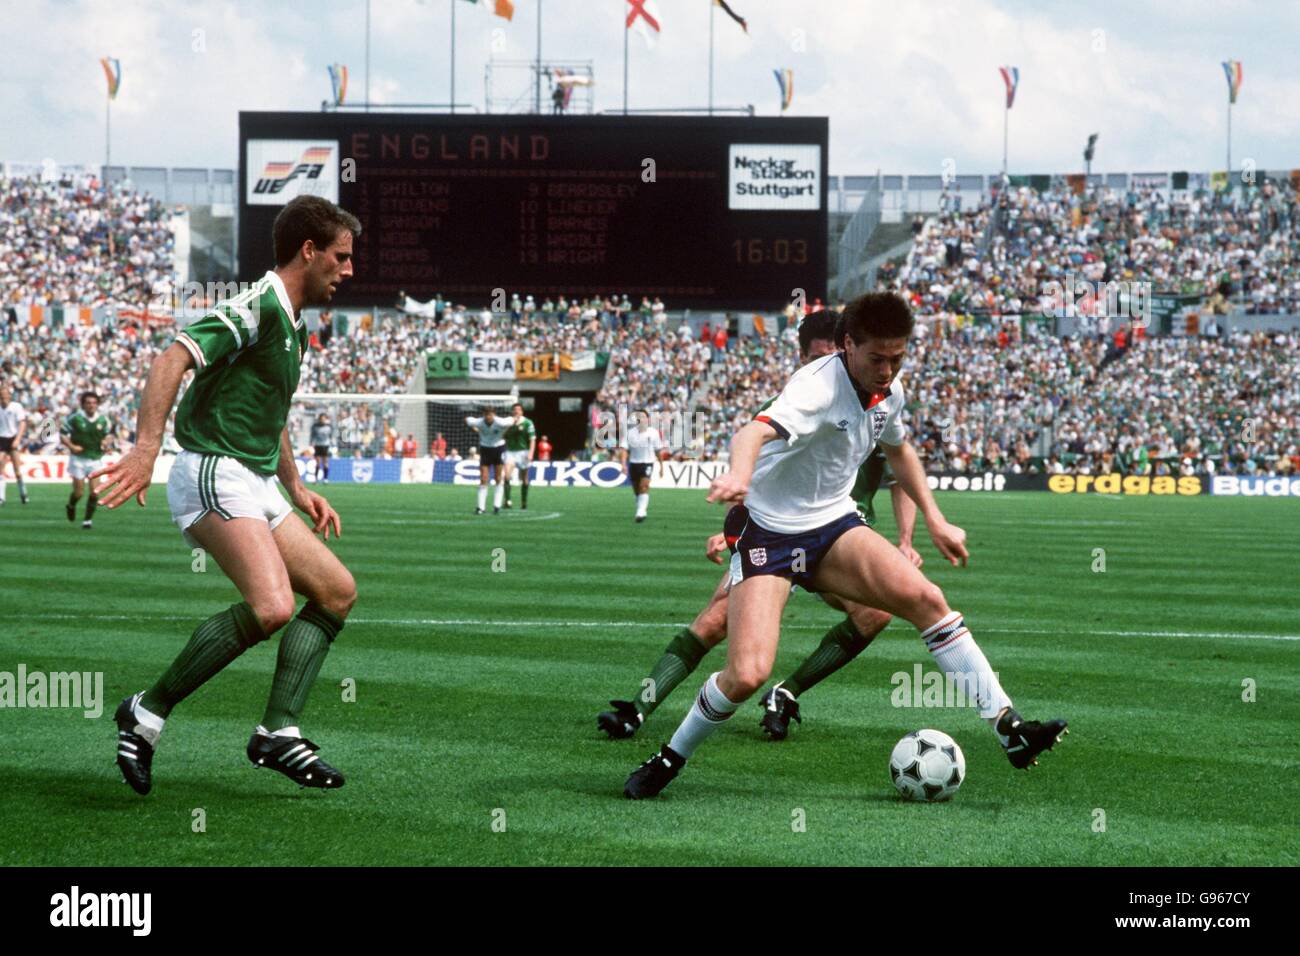 Calcio - Campionati europei - Euro 88 Germania Ovest - Gruppo due - Irlanda / Inghilterra - Neckarstadion. Inghilterra Chris Waddle (a destra) protegge la palla mentre Mick McCarthy (a sinistra) dell'Irlanda si muove per affrontare Foto Stock